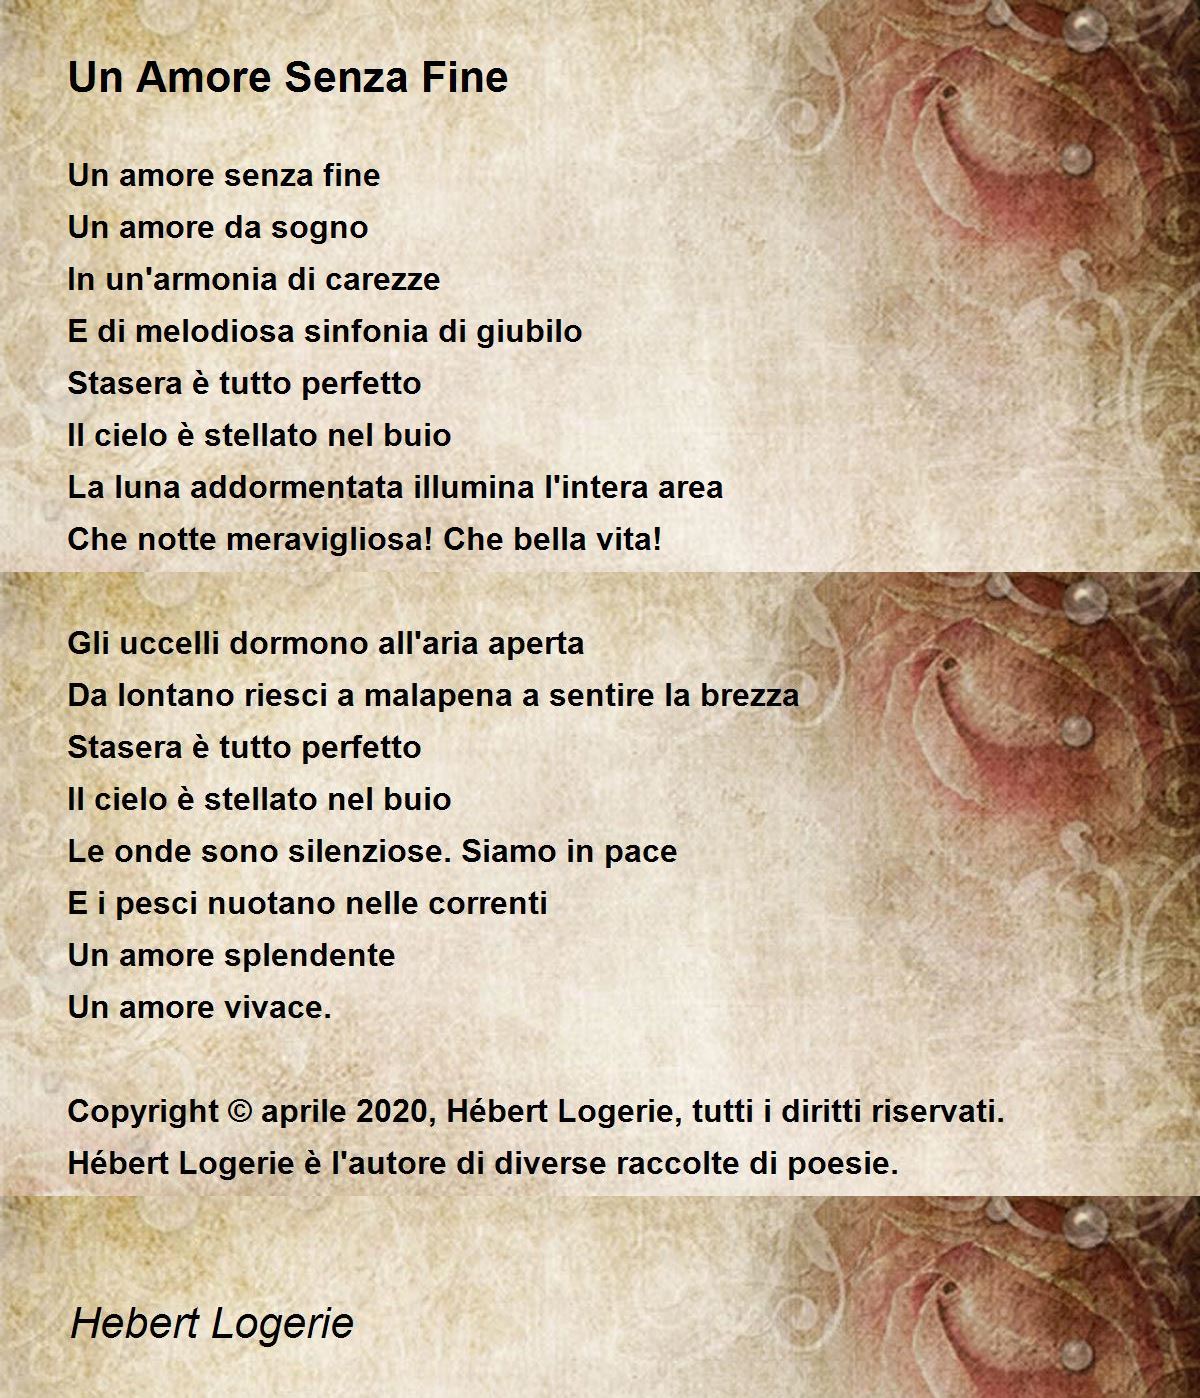 Un Amore Senza Fine - Un Amore Senza Fine Poem by Hebert Logerie